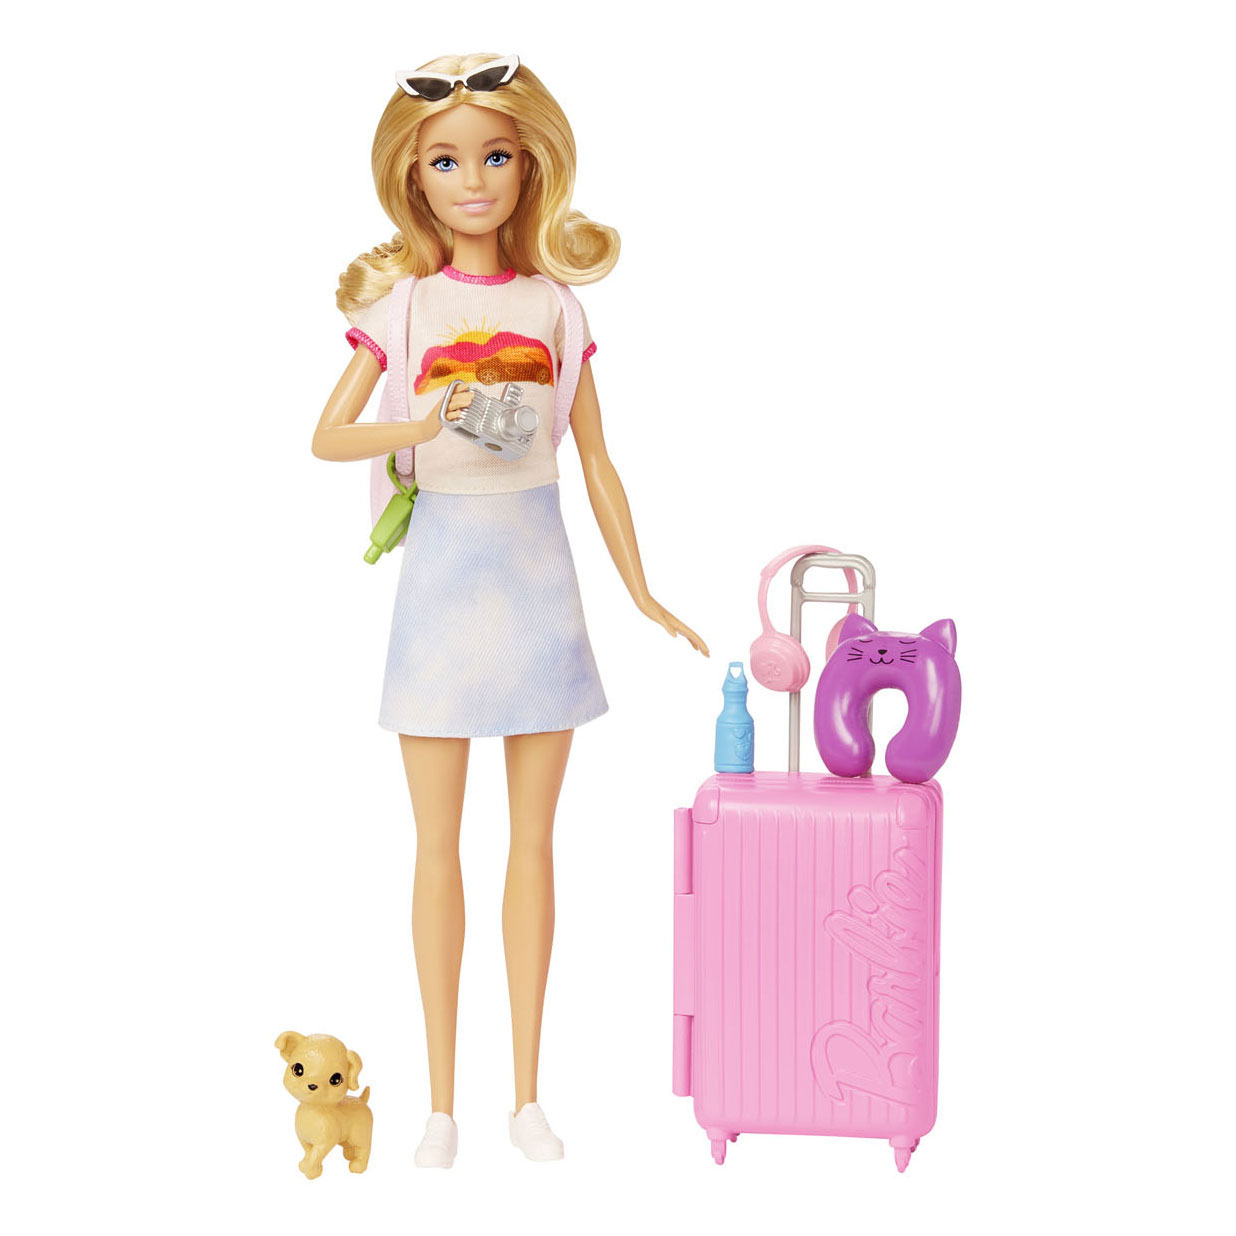 Barbie Dreamhouse Adventures Pop